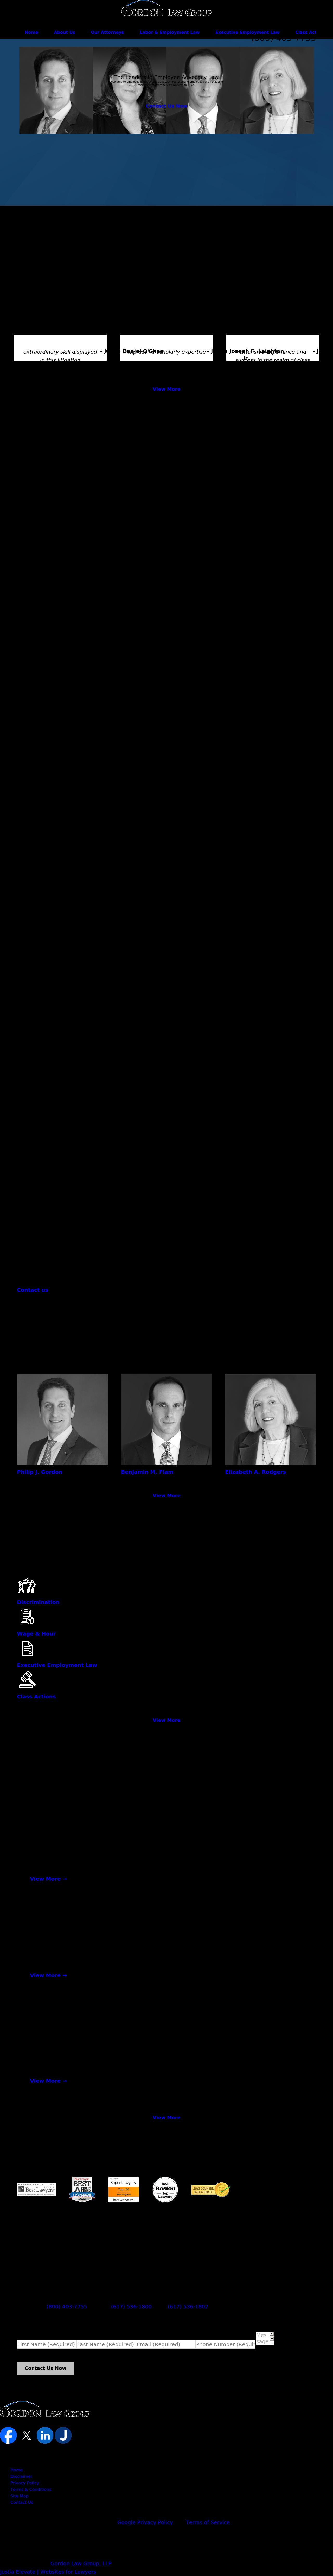 Gordon Law Group, LLP - Boston MA Lawyers